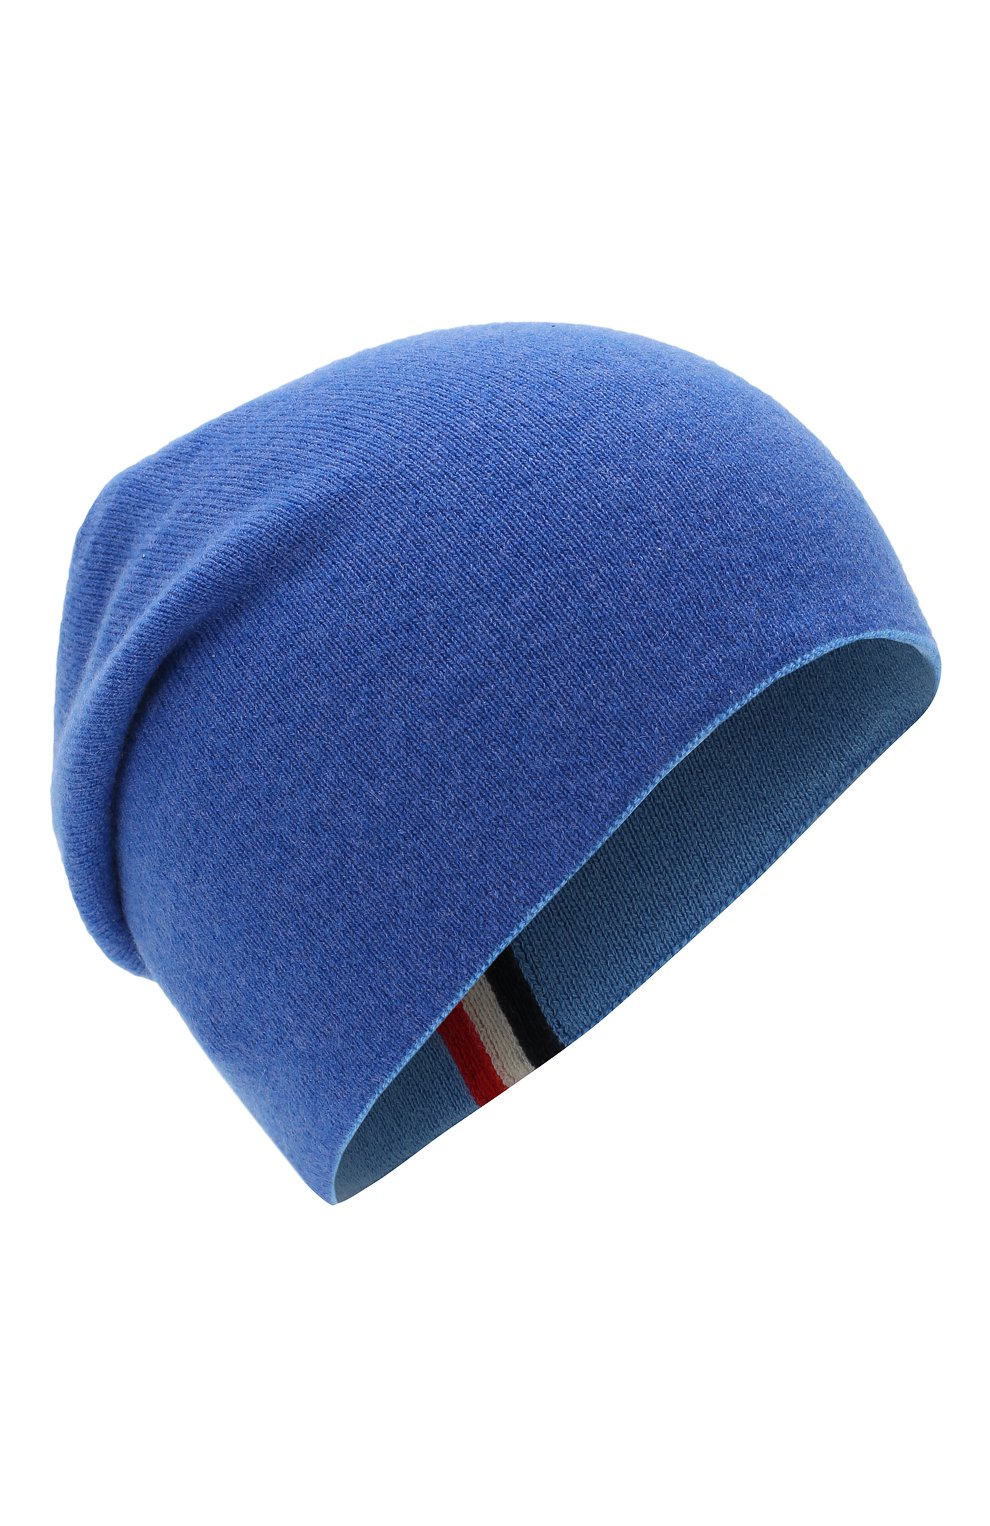 Мужская кашемировая шапка MONCLER голубого цвета, арт. D2-091-99221-00-9959C | Фото 1 (Материал: Текстиль, Кашемир, Шерсть; Кросс-КТ: Трикотаж)